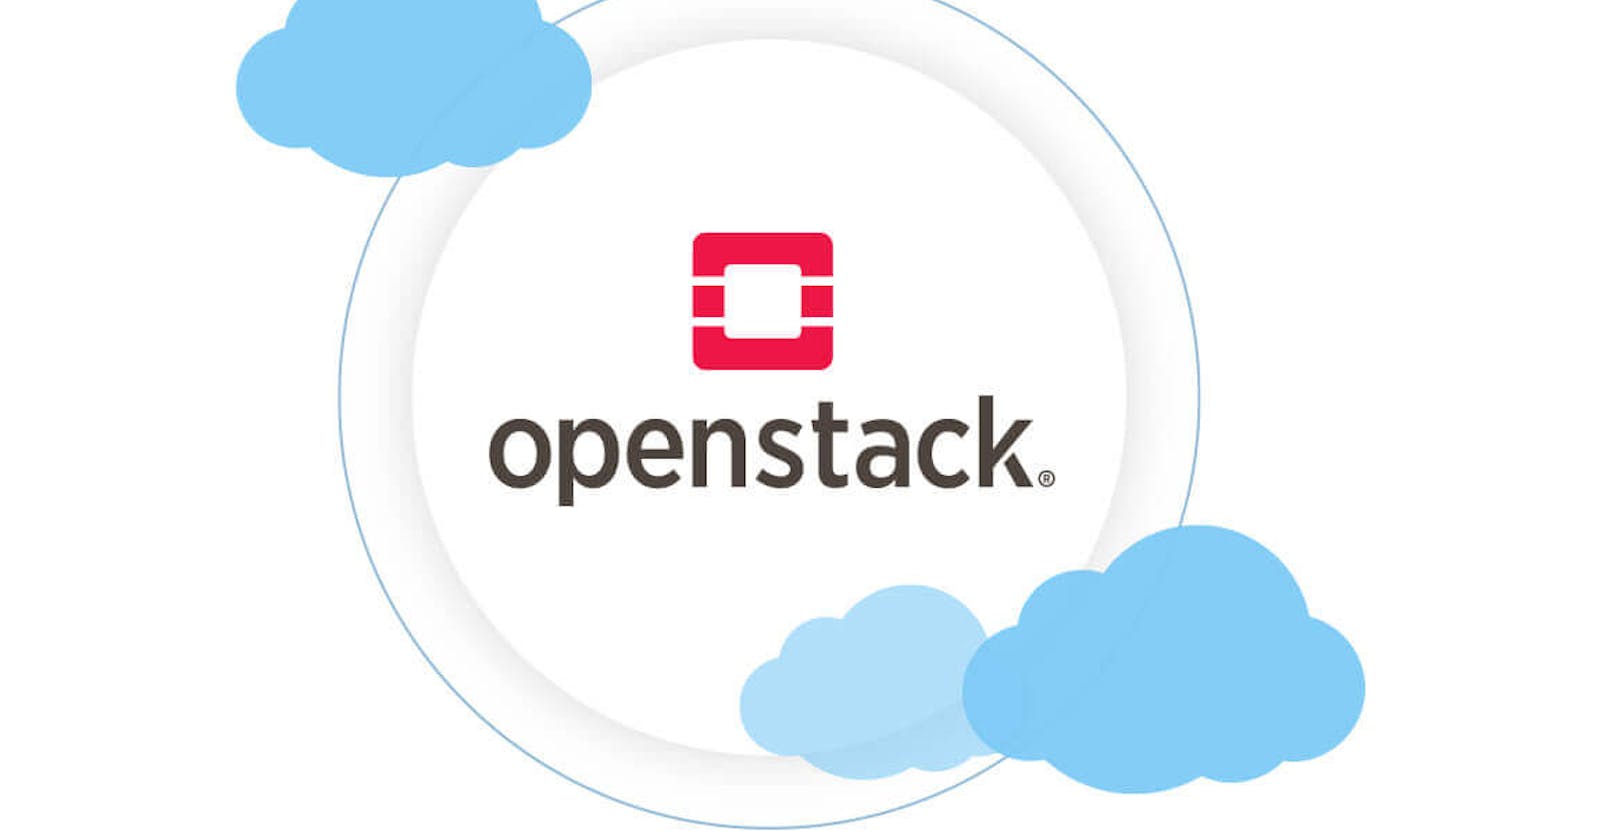 OpenStack: The Open-Source Cloud Platform